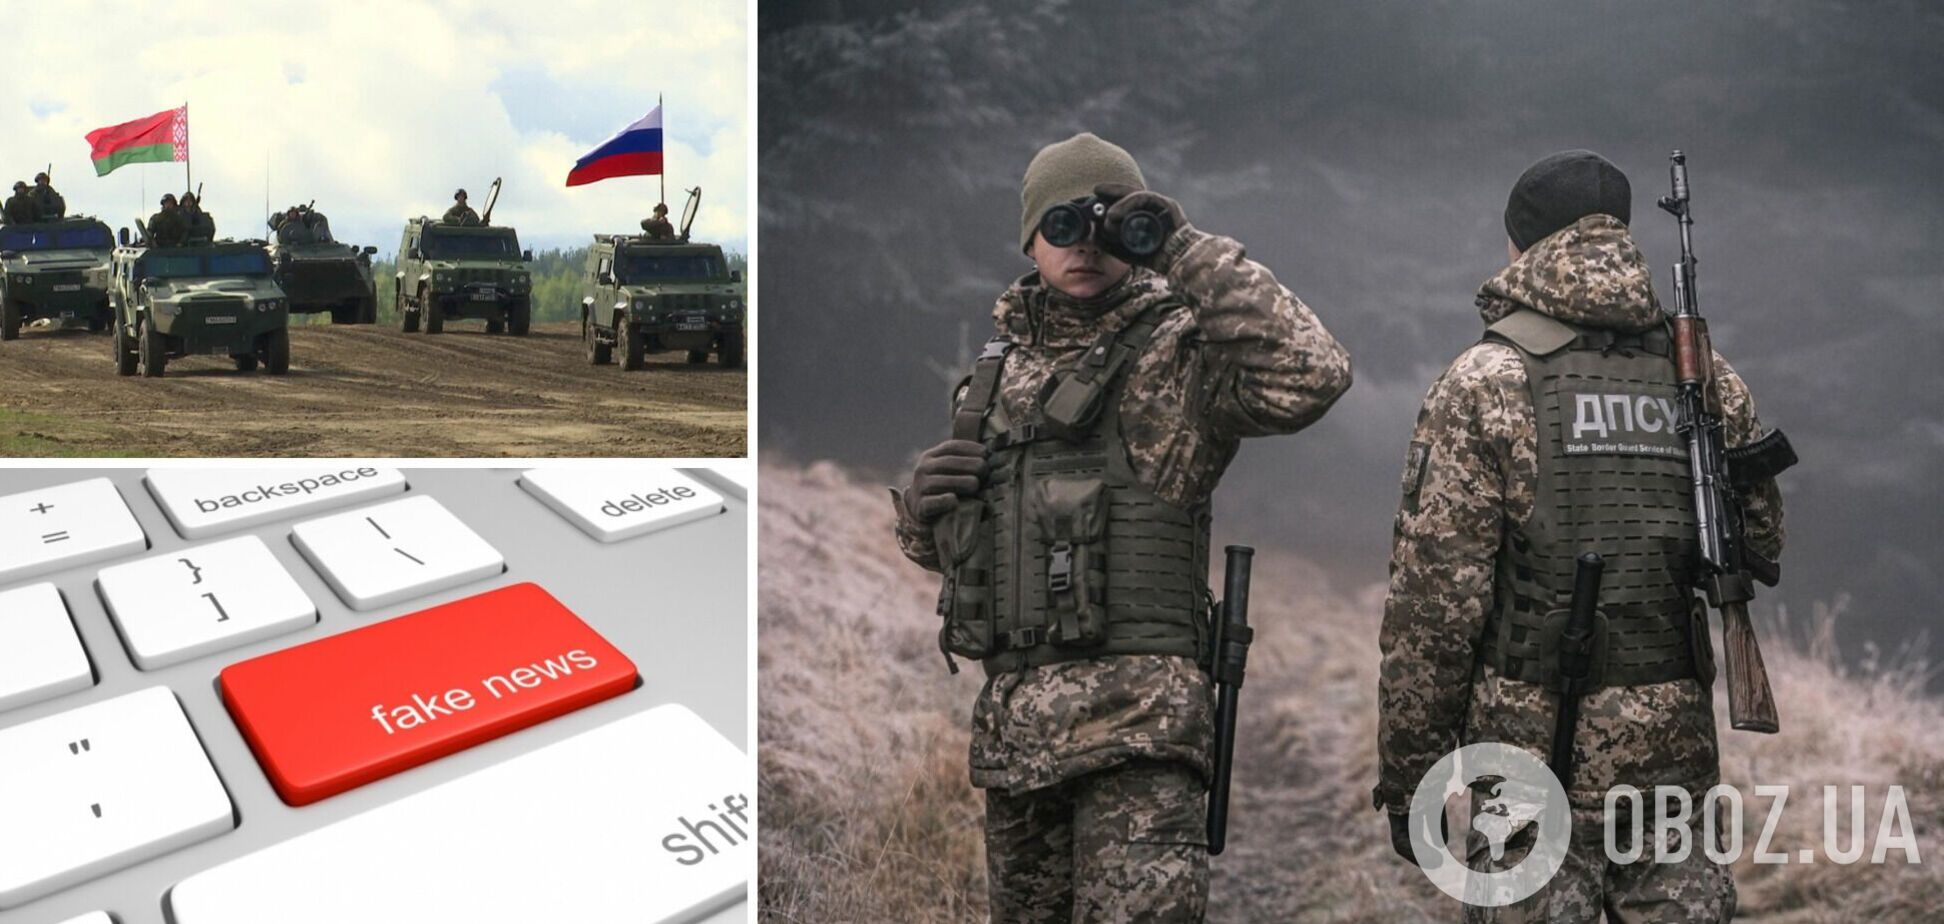 ГПСУ ответила на фейк о беларусской военной технике